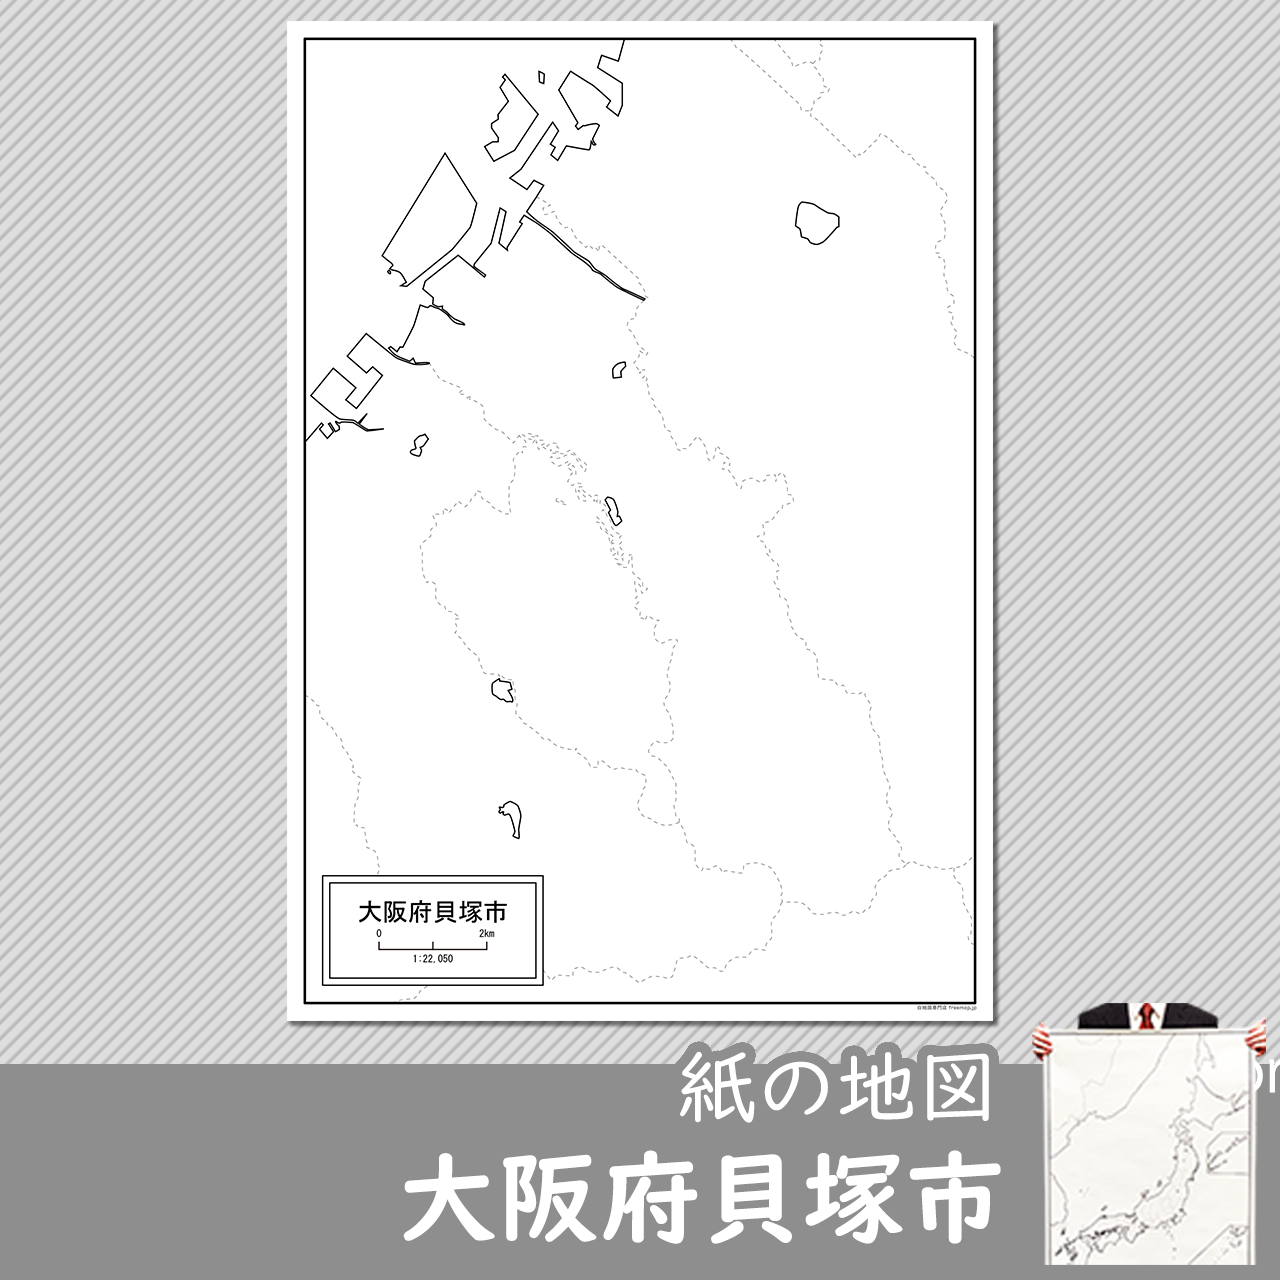 貝塚市の紙の白地図のサムネイル